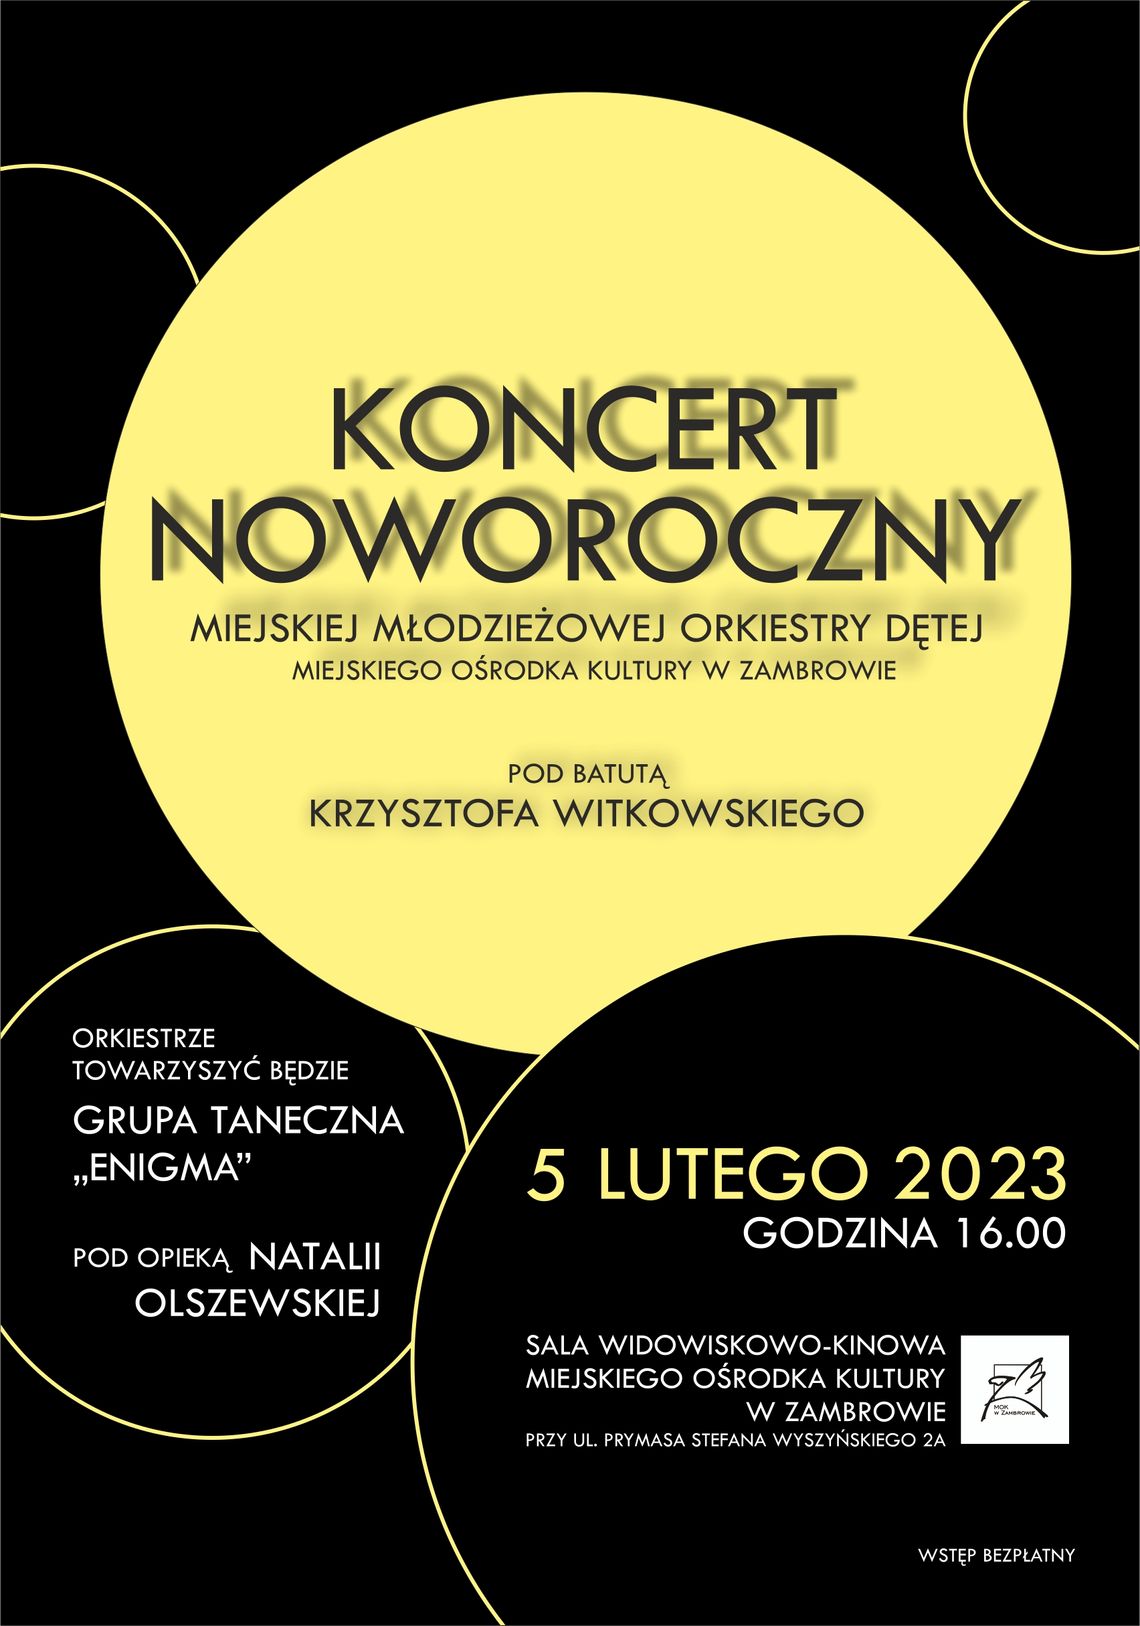 Koncert Noworoczny Orkiestry Dętej  w Zambrowie